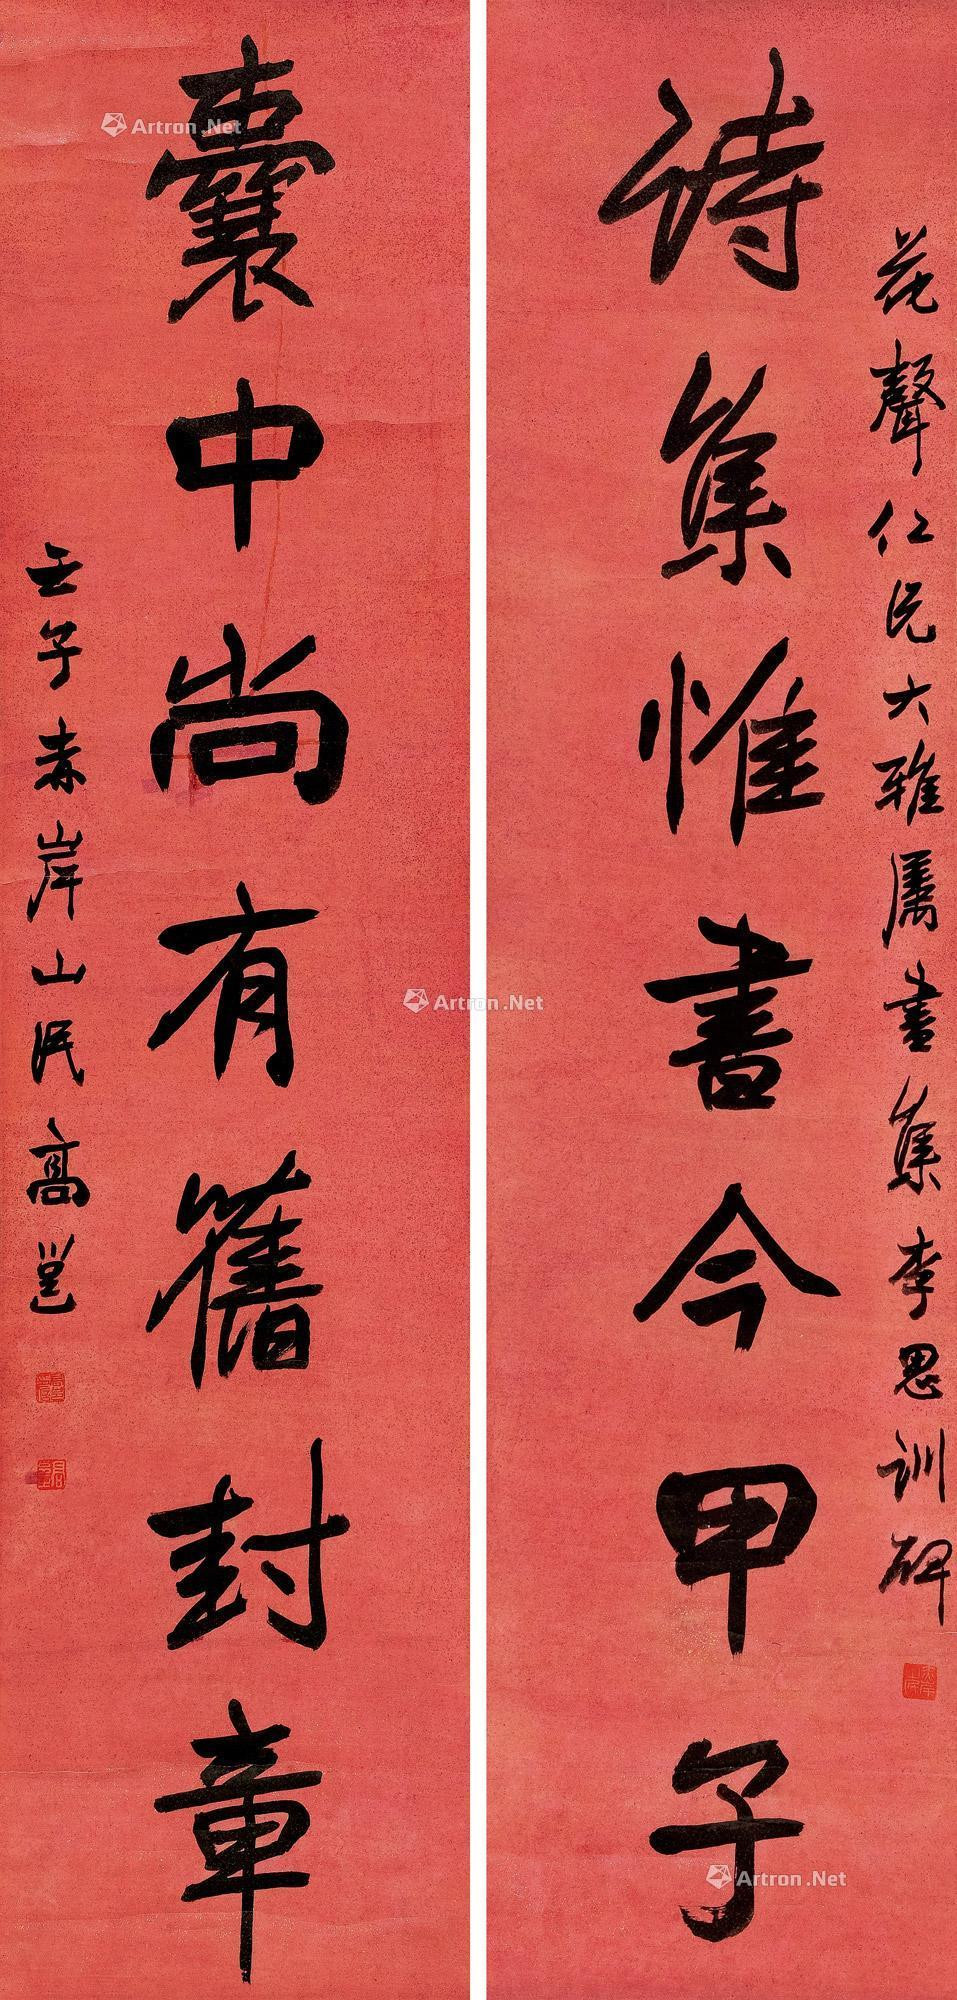 Calligraphy Couplet in Regular Script